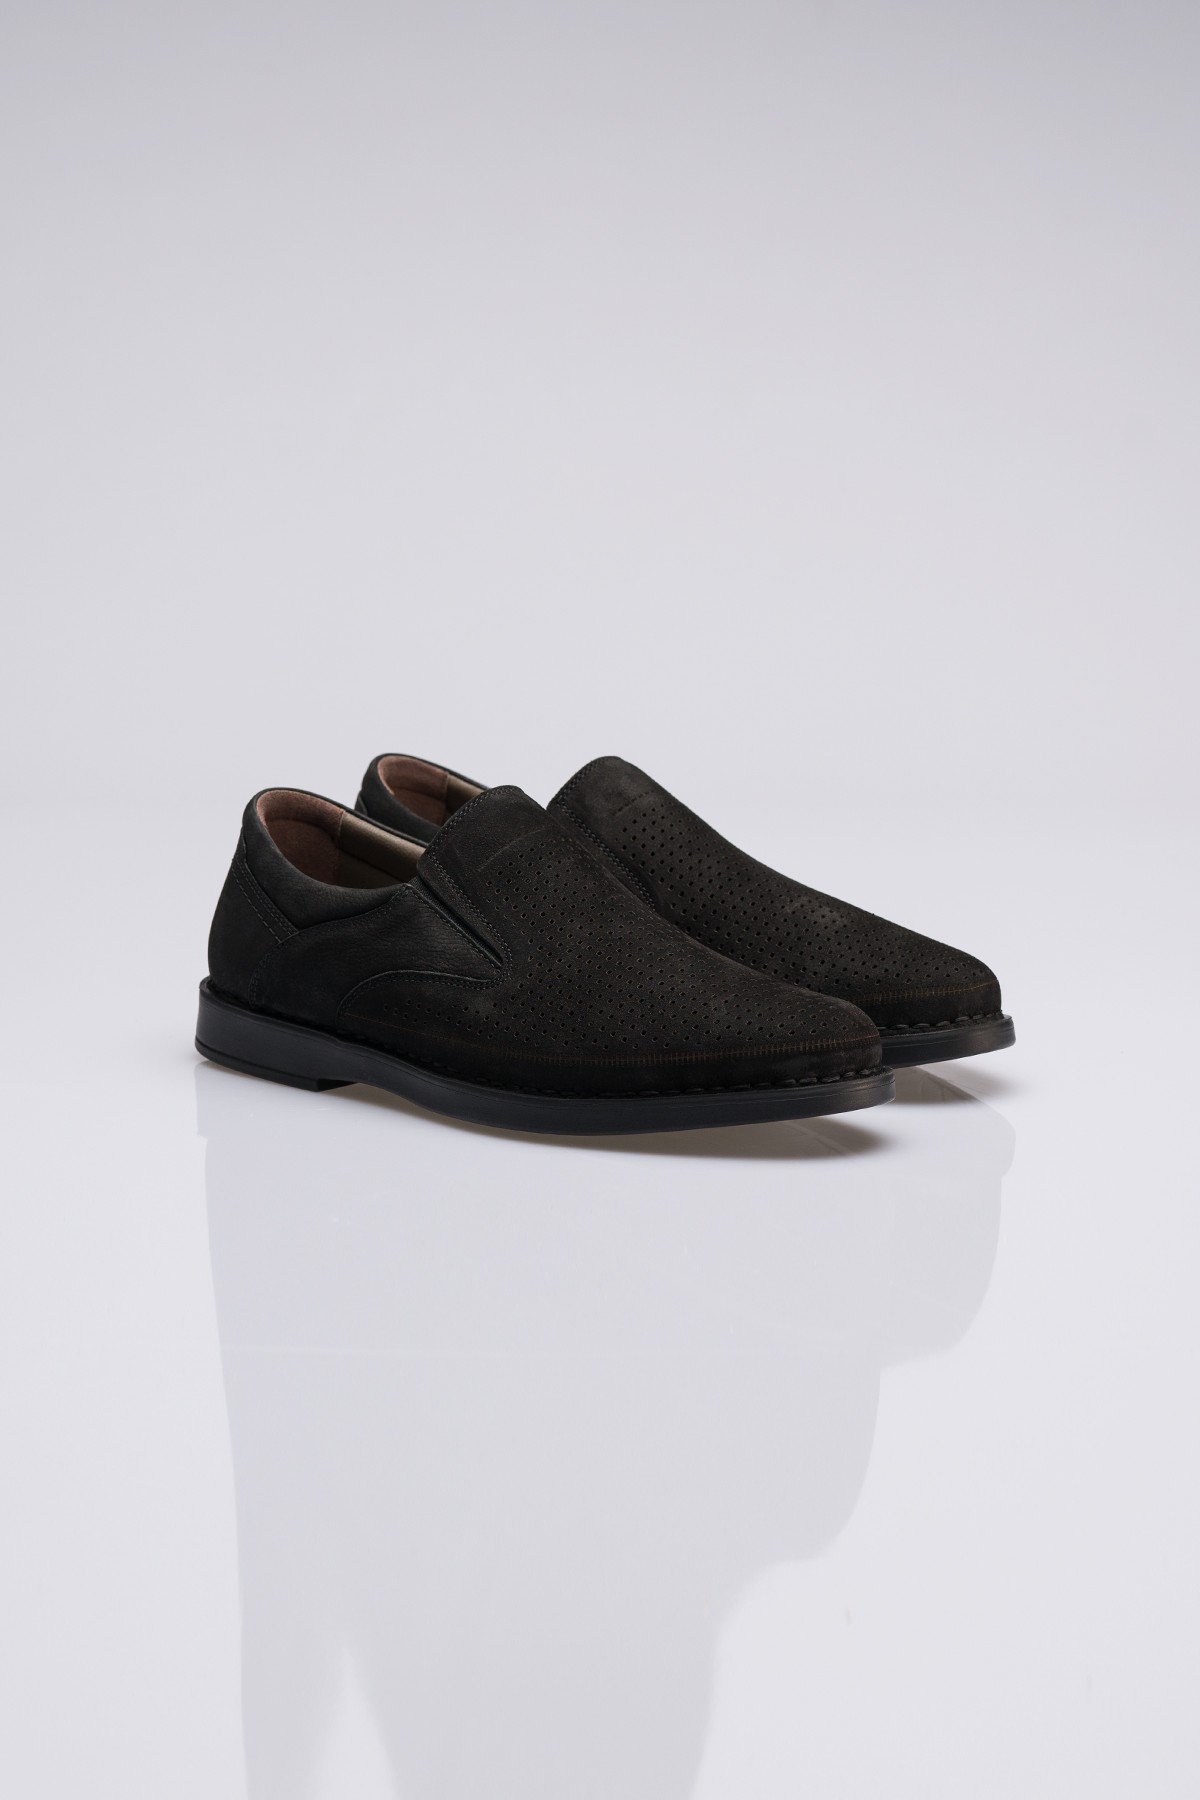 LLZİT Siyah Hakiki Deri Süet Klasik Erkek Ayakkabı